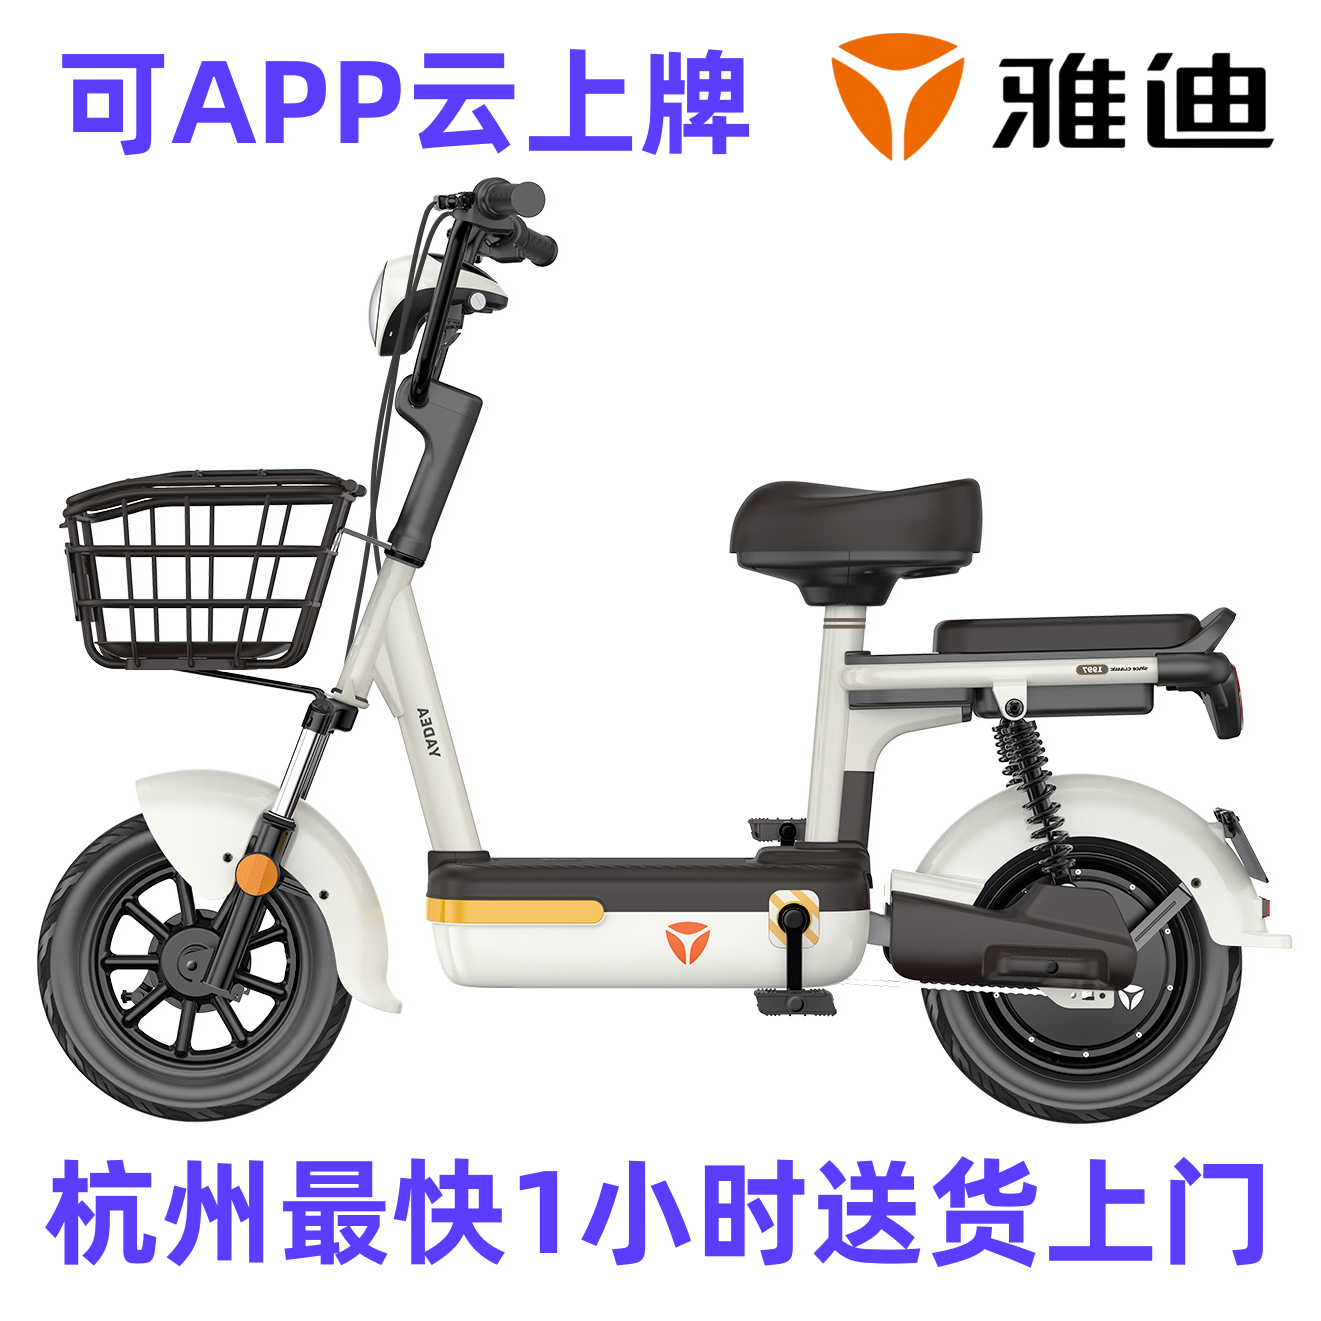 雅迪新款乐糖可上牌新国标3c认证电瓶车成人小型电动自行车杭州